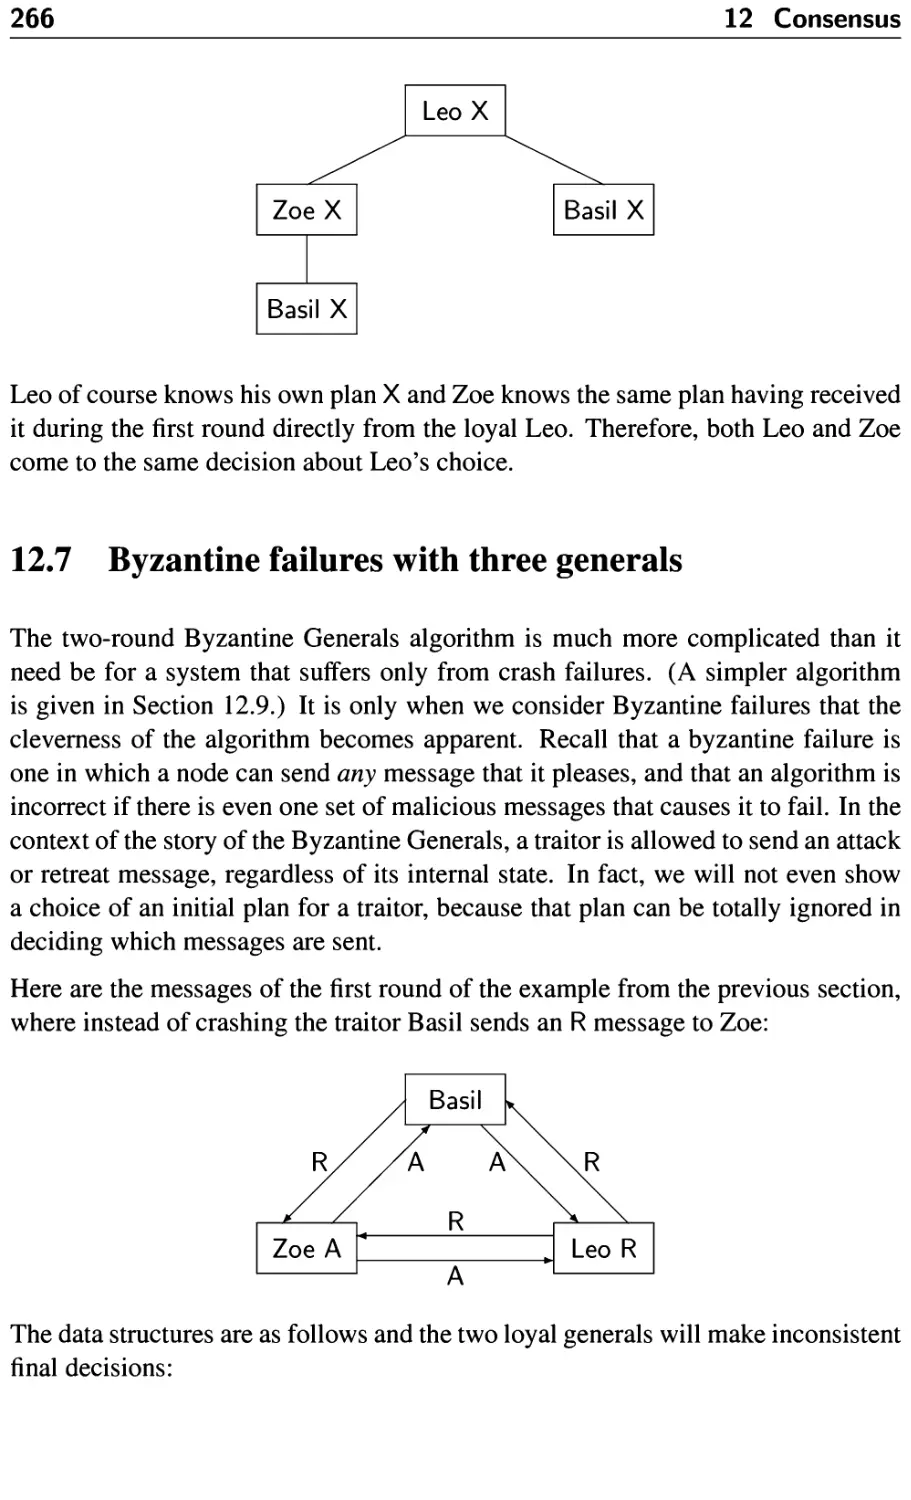 12.7 Byzantine failures with three generals